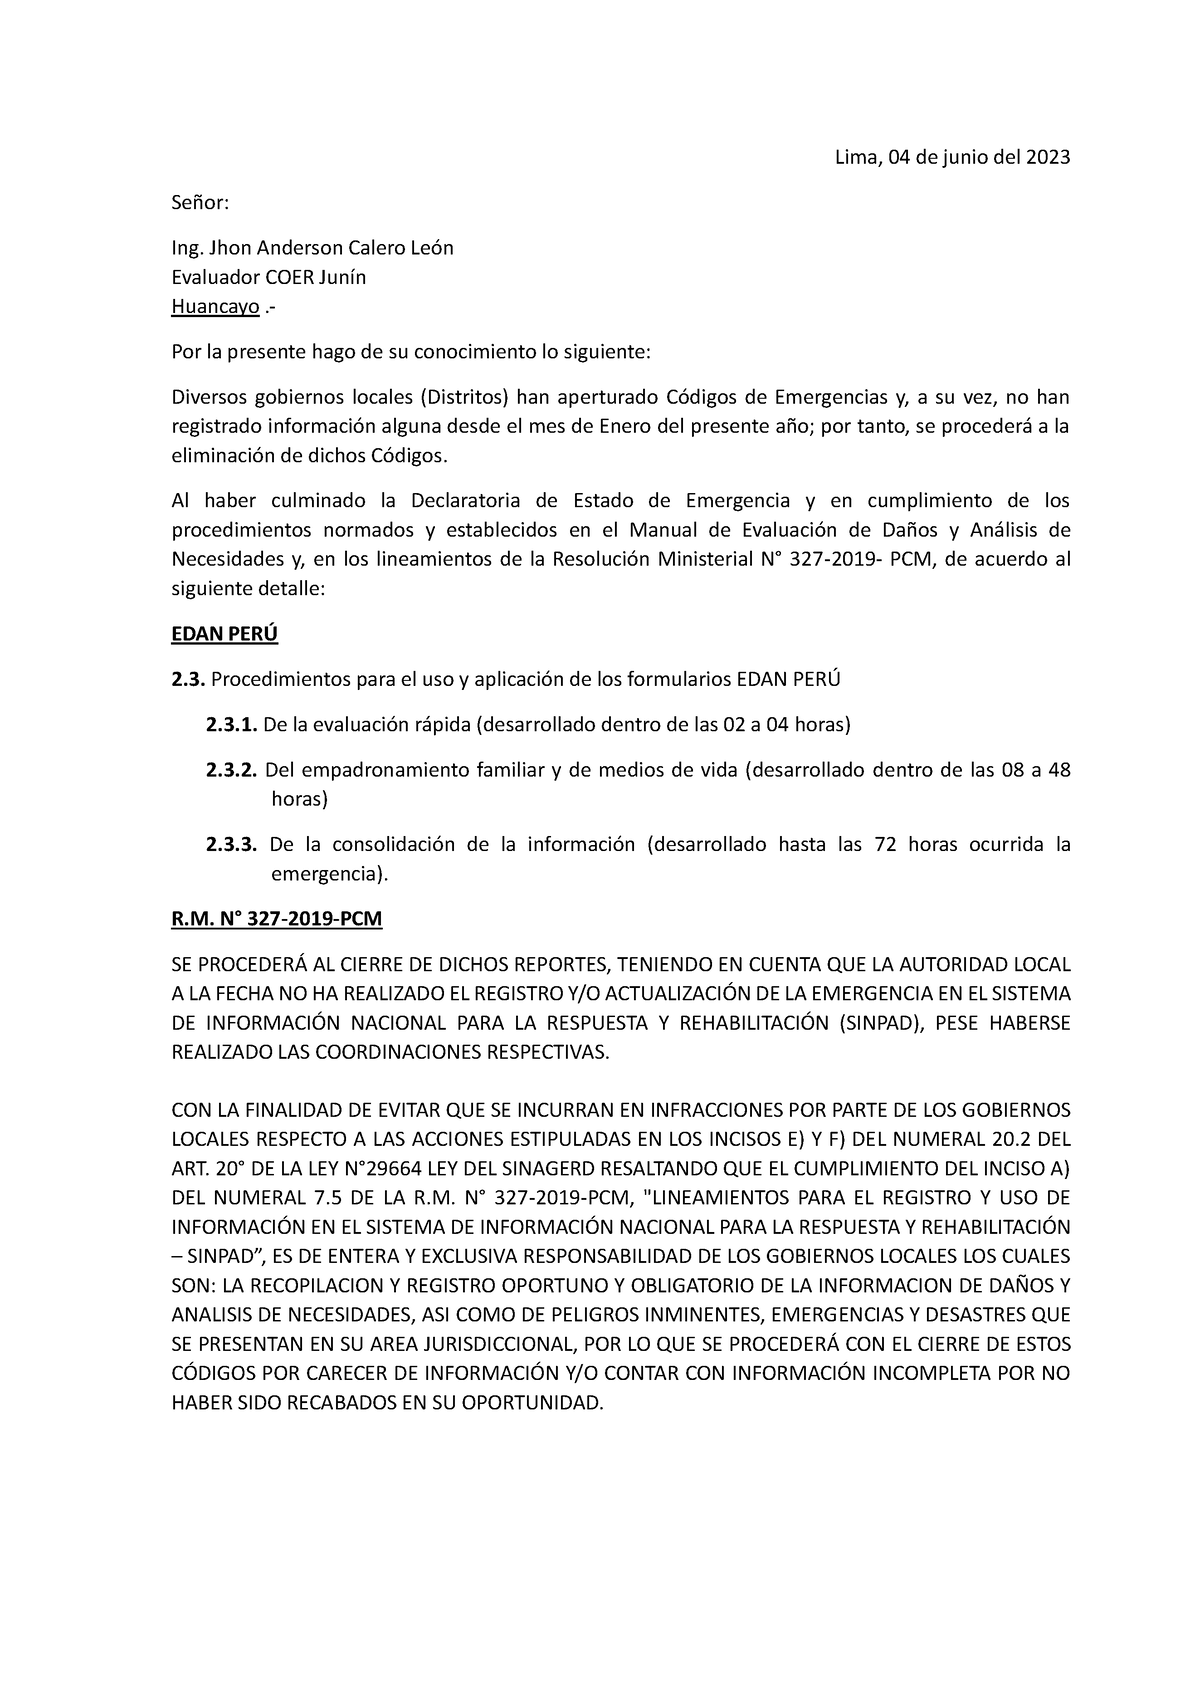 X Eliminación DE Códigos EN EL Sinpad - Lima, 04 de junio del 2023 ...